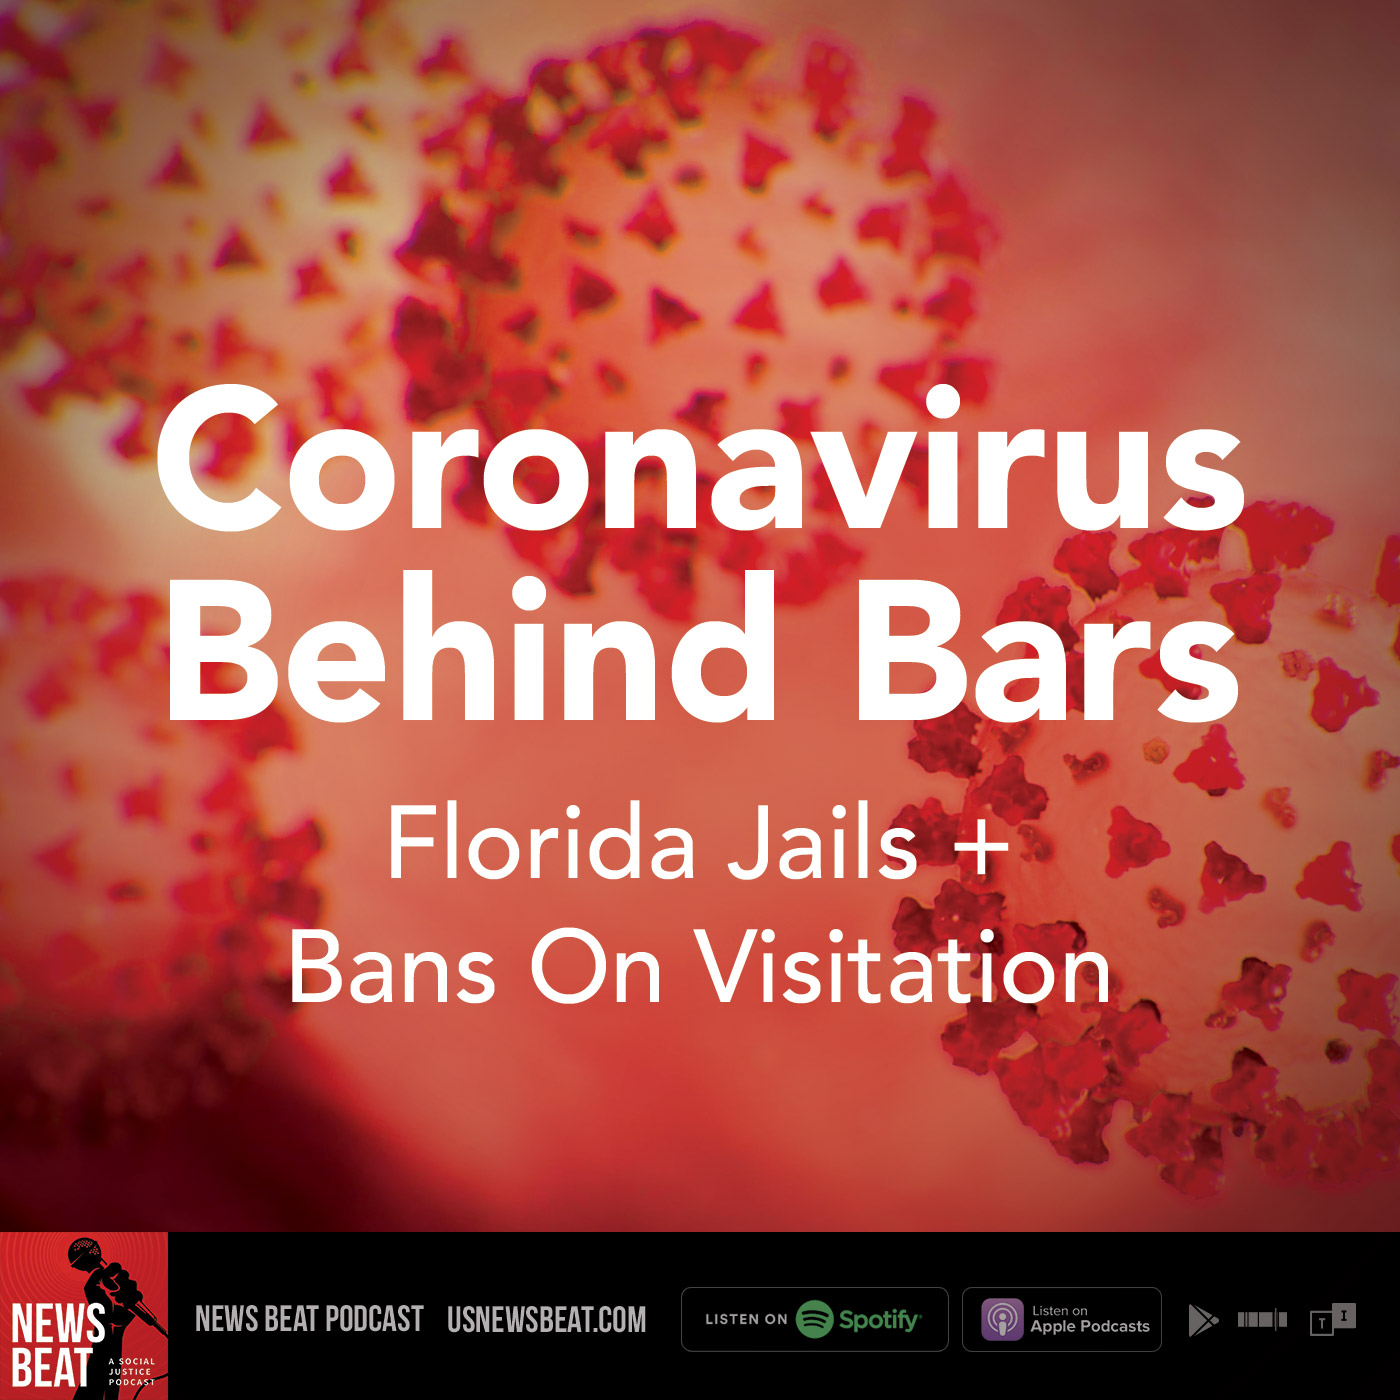 Coronavirus Behind Bars